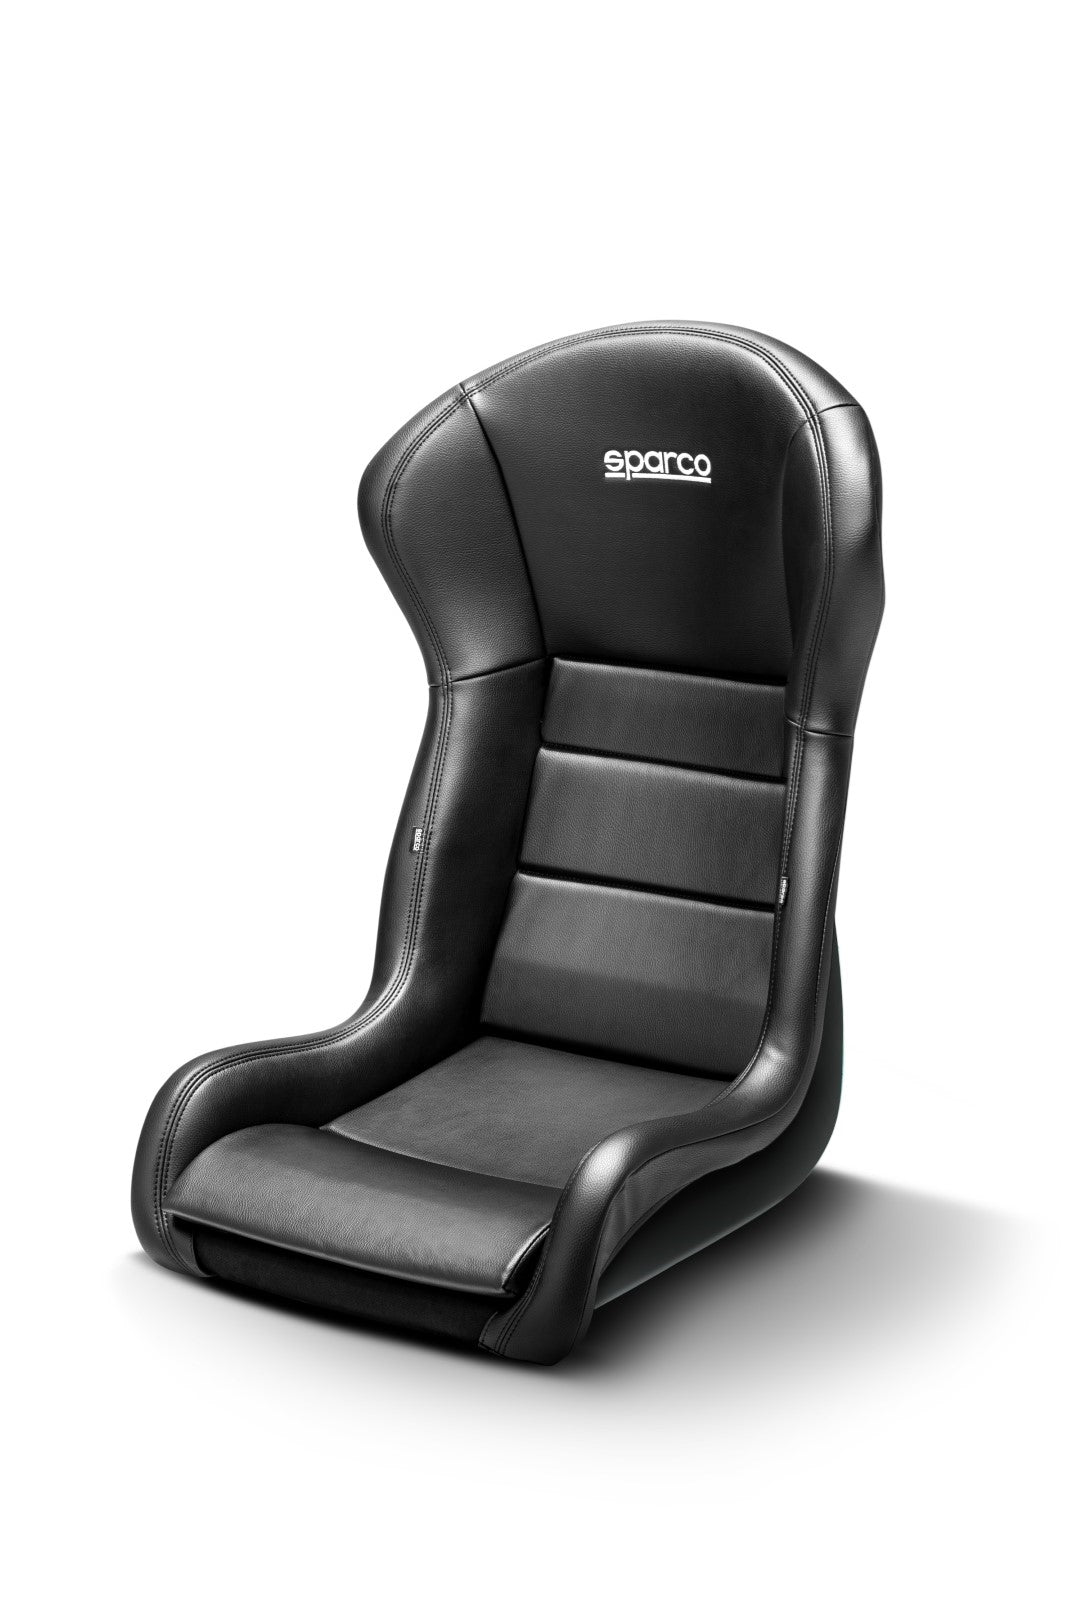 SPARCO SEAT STRADALE VINYL BLACK - 0